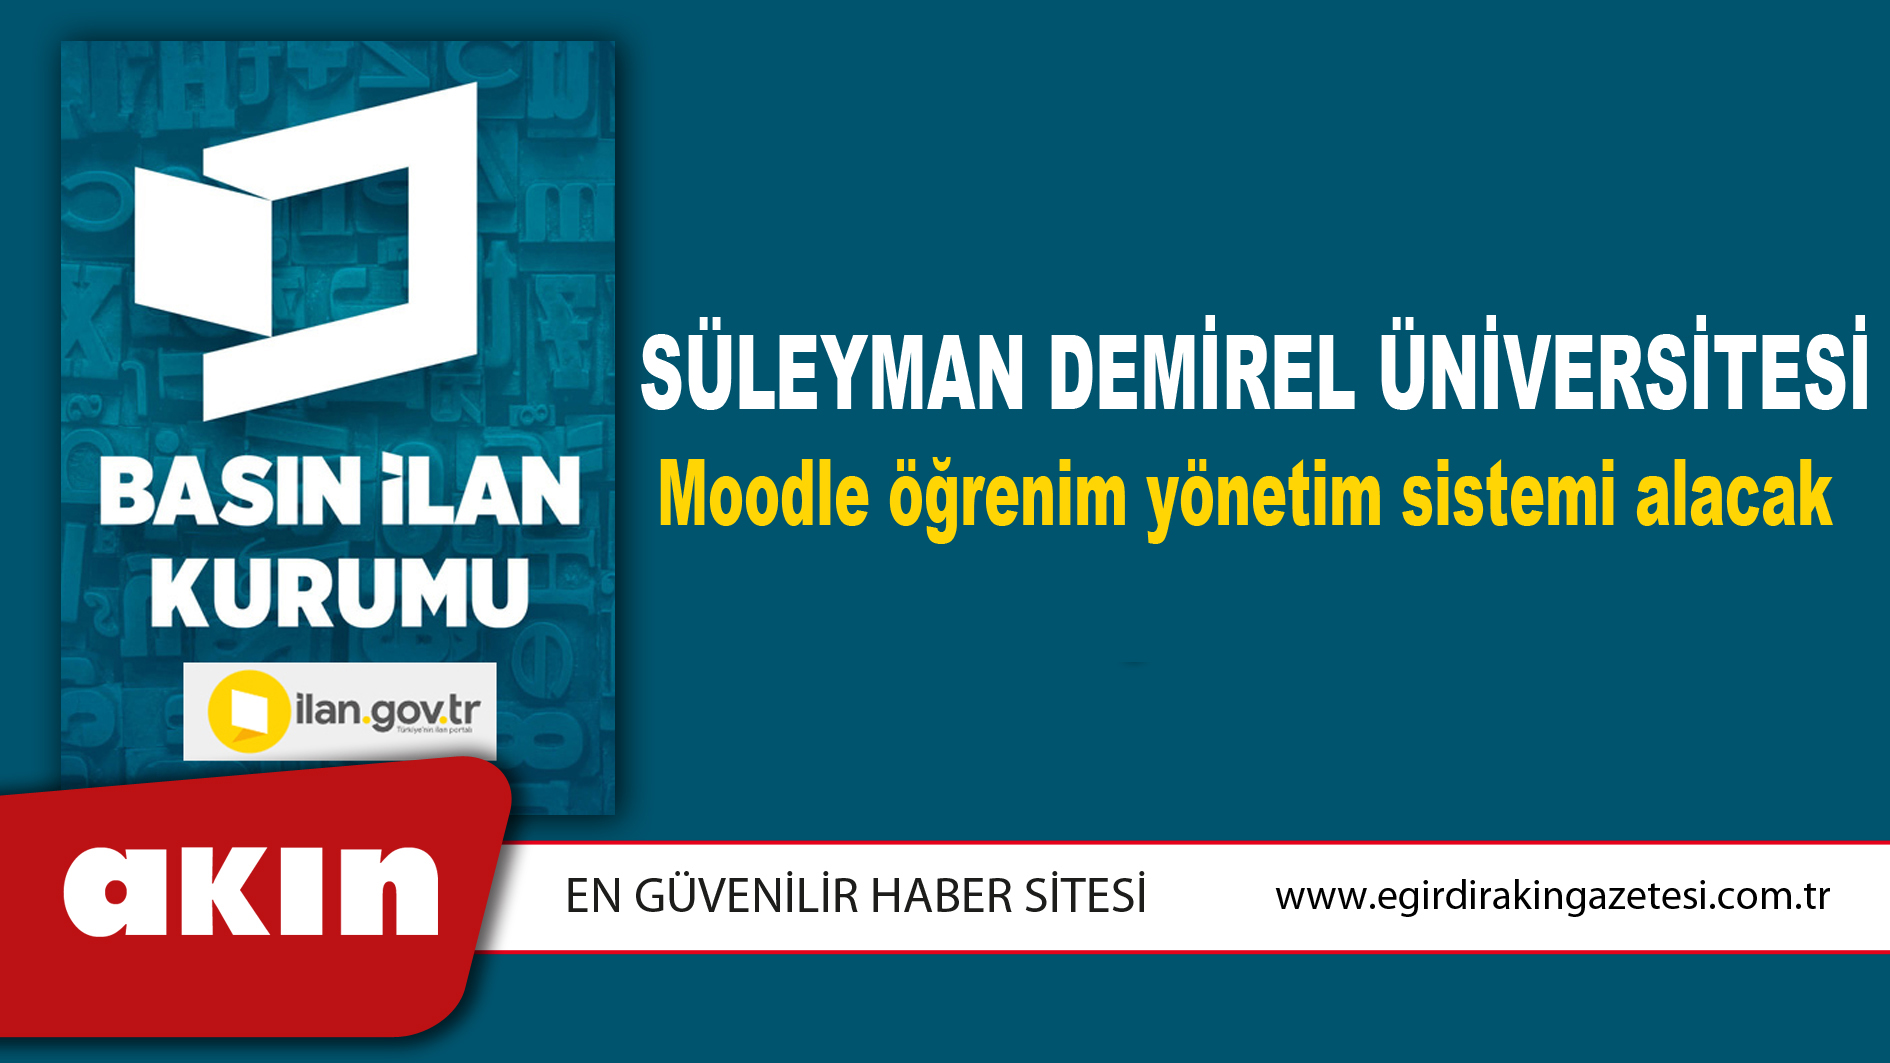 eğirdir haber,akın gazetesi,egirdir haberler,son dakika,Süleyman Demirel Üniversitesi Moodle öğrenim yönetim sistemi alacak